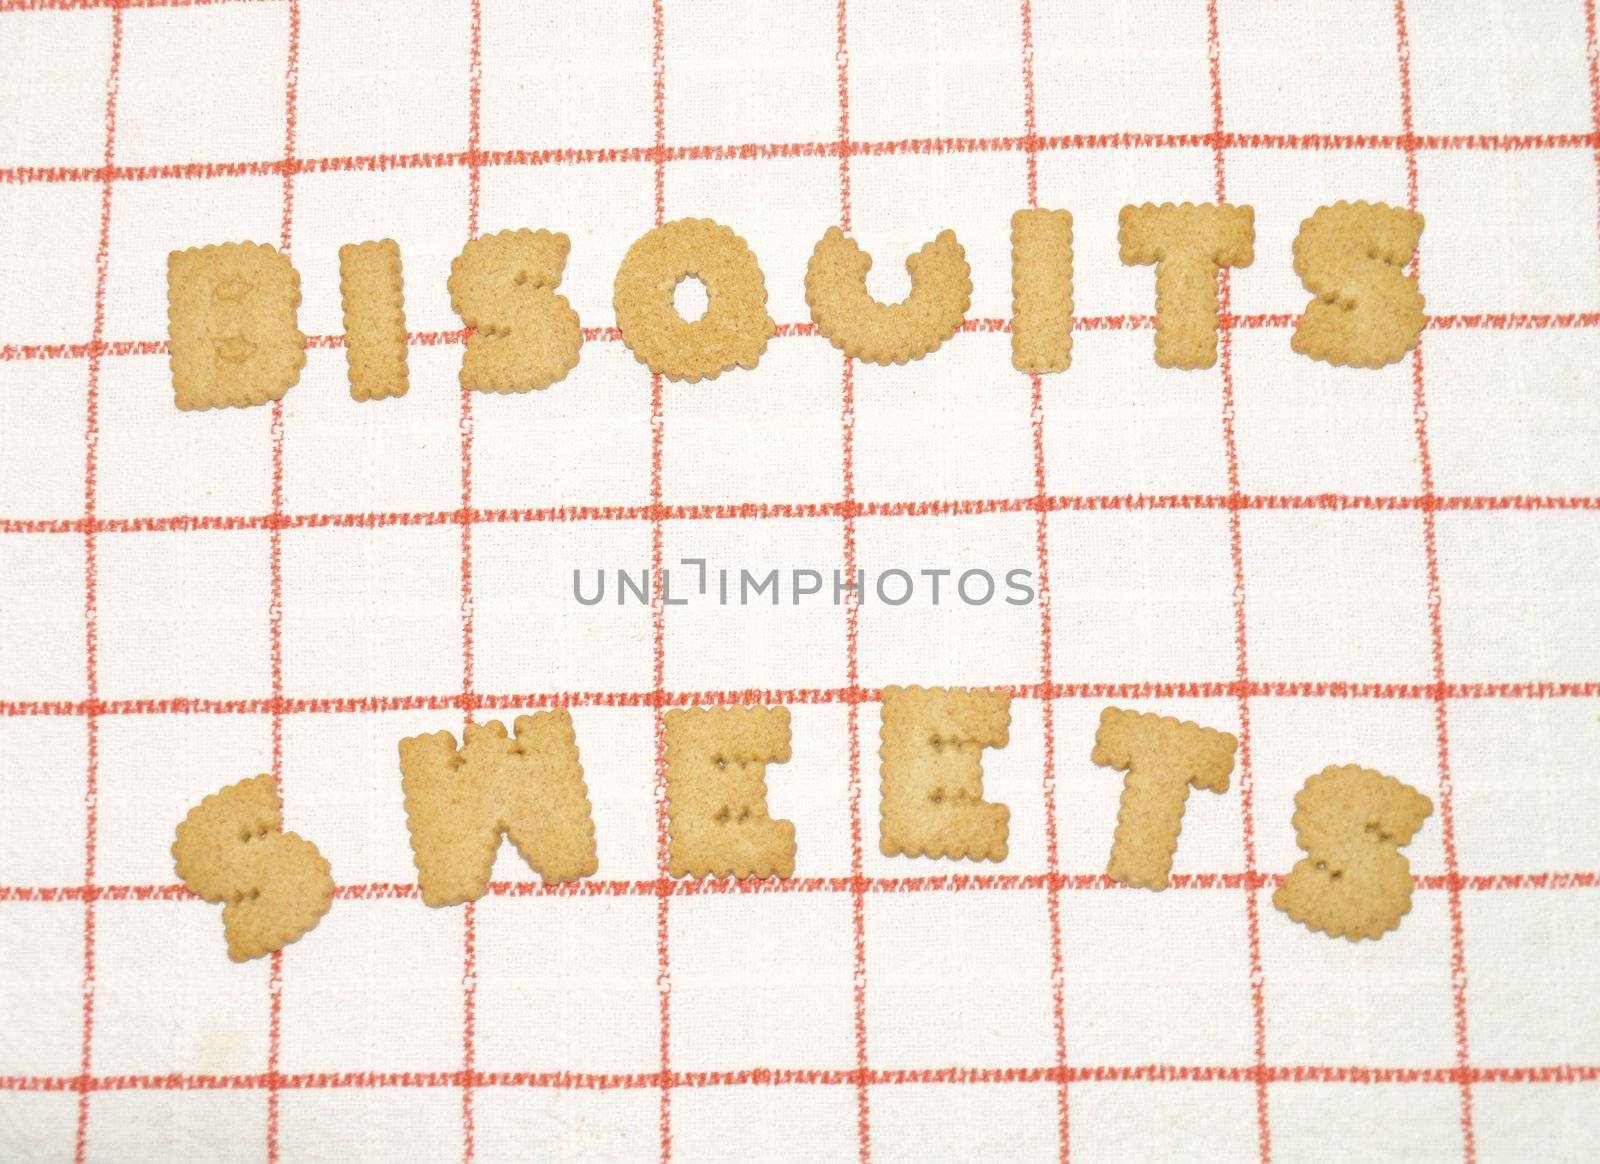 Bisquits by viviolsen